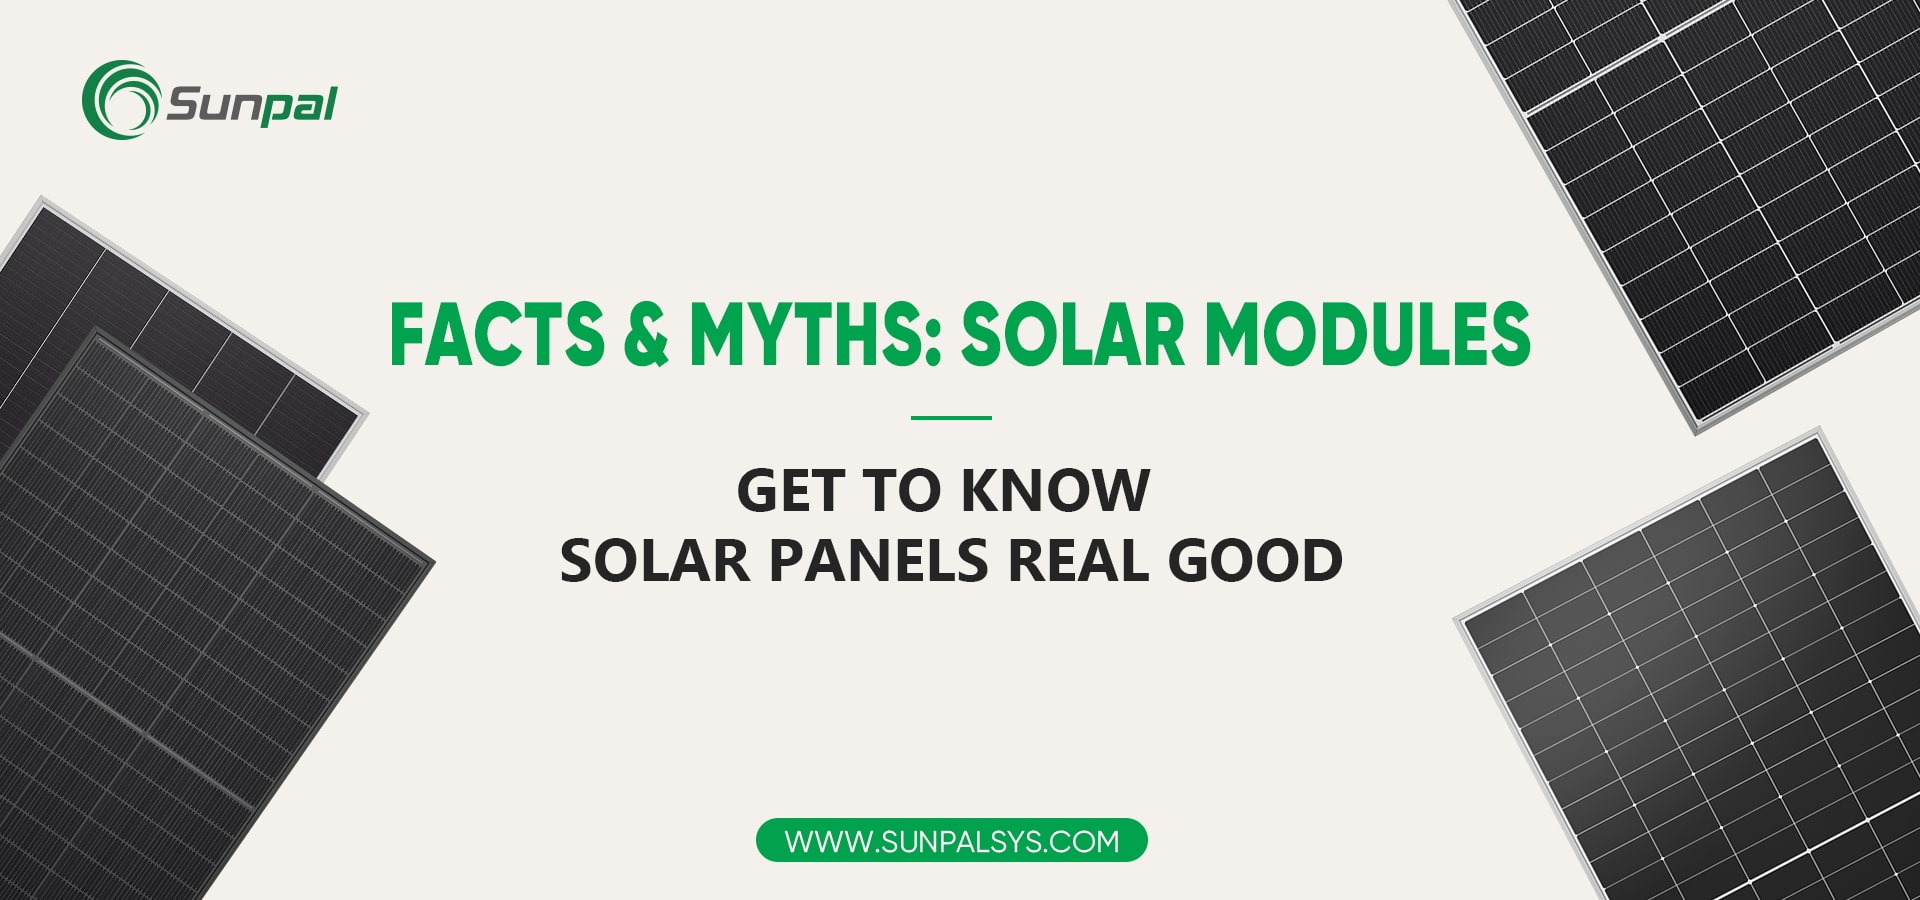 Sun Power Truth Bomb: Missverständnisse über Solarmodule
        